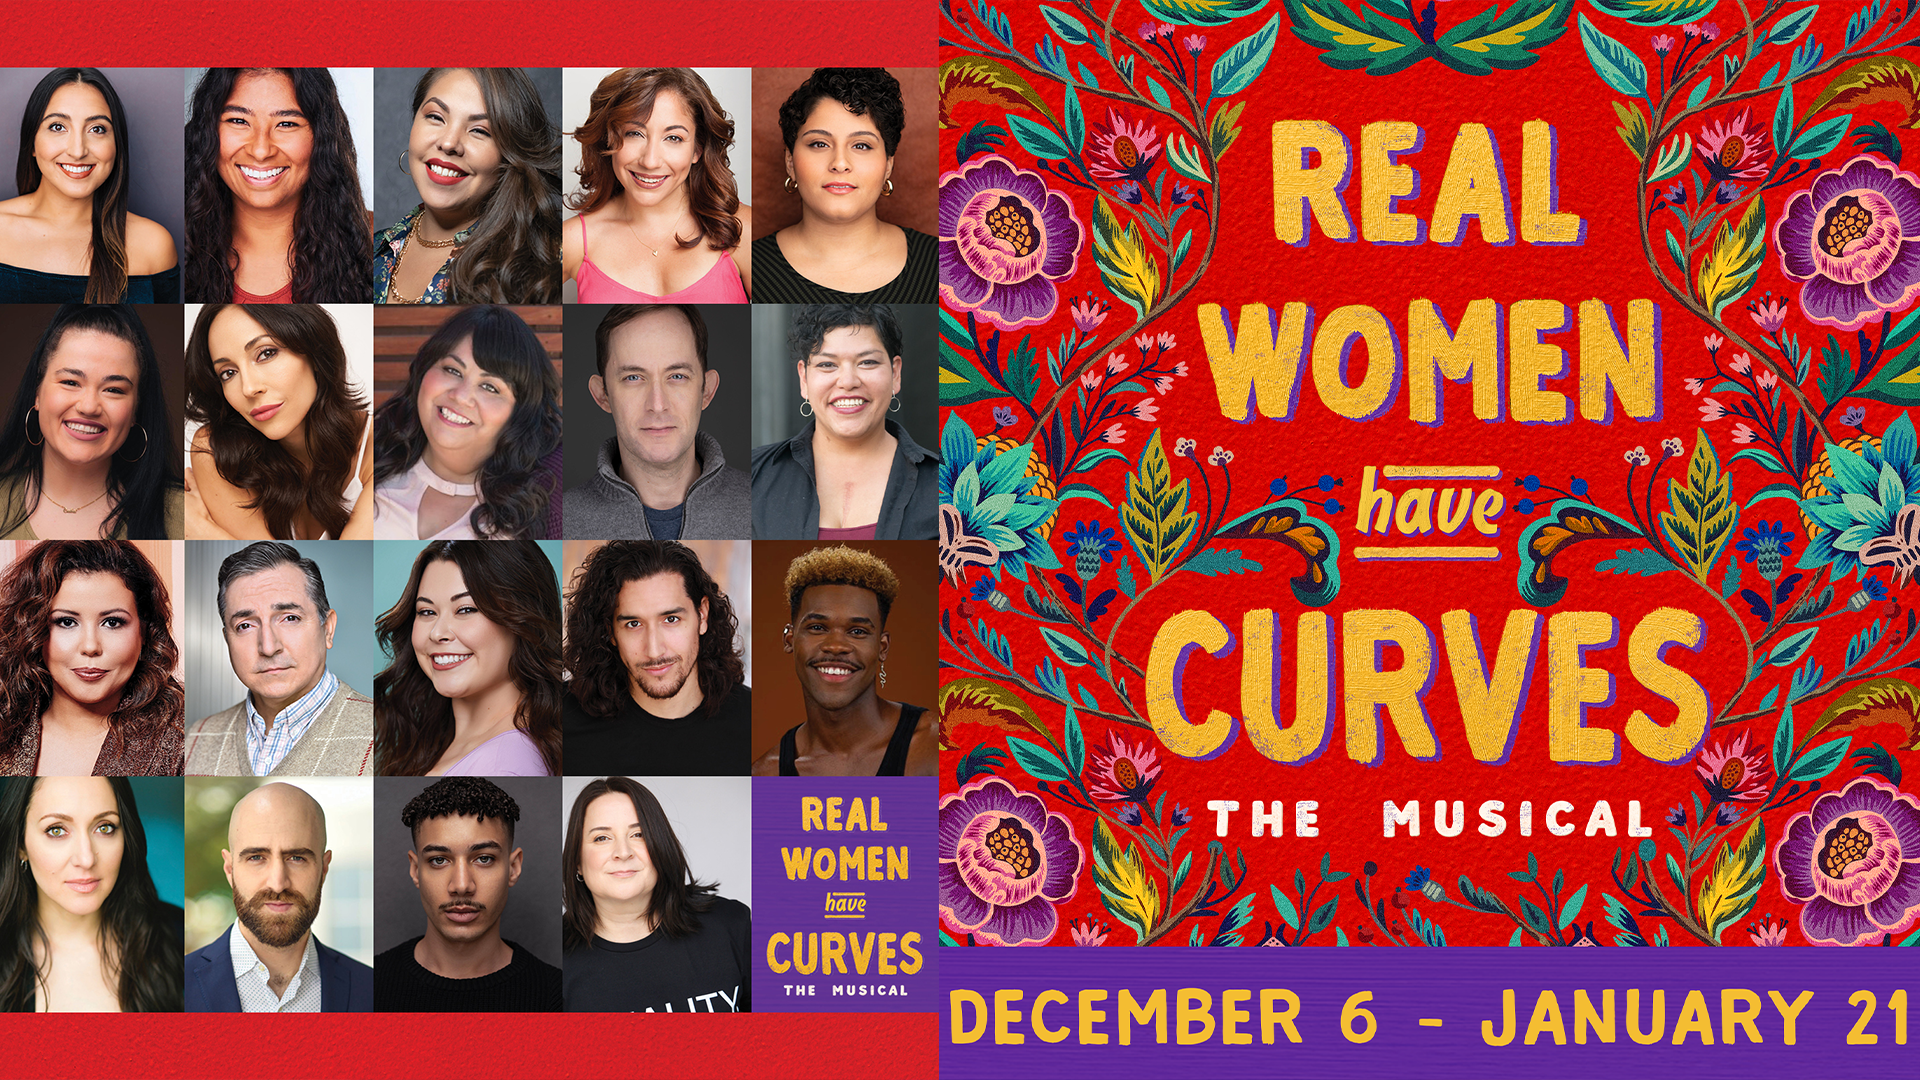 Real Women Have Curves: The Musical' encantará al público - Nuestro Stories